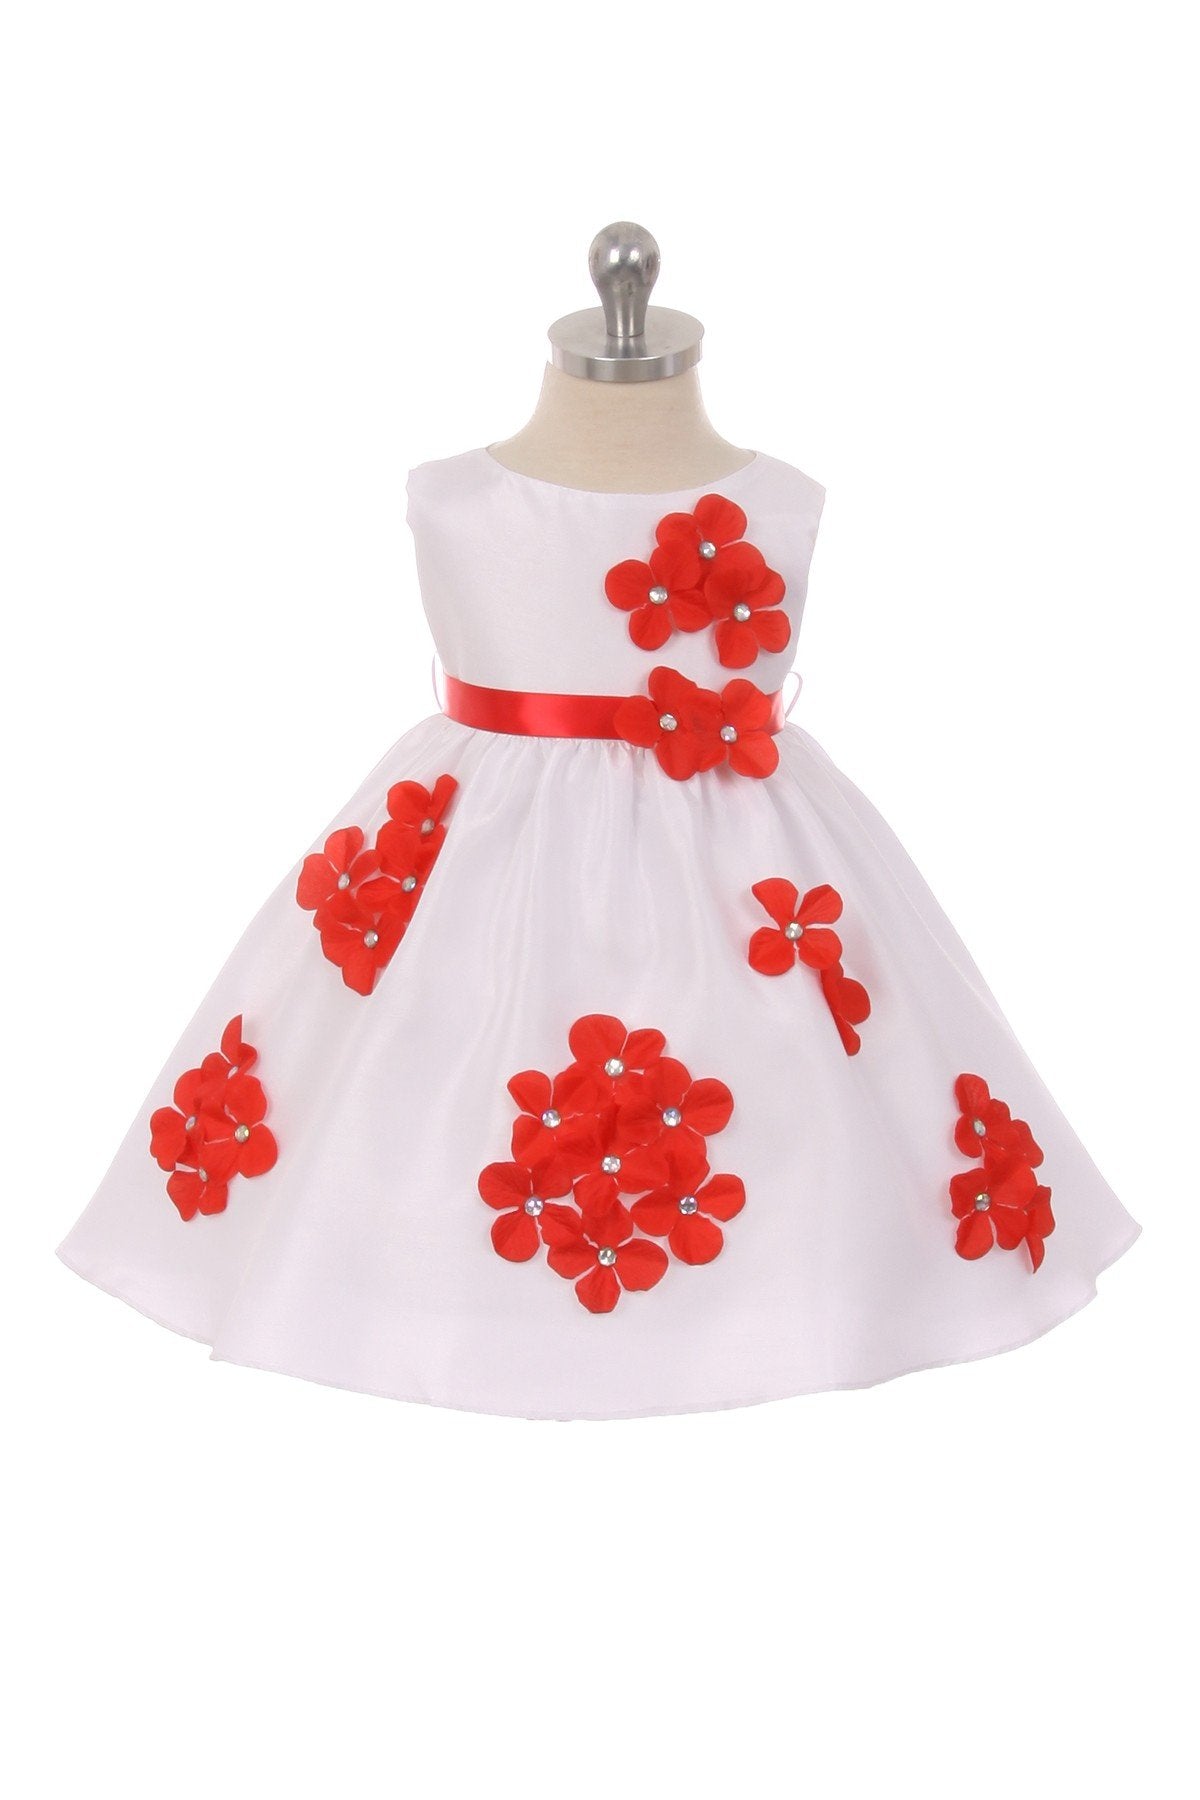 Dress - Shantung Dress Flower Petals Baby Dress